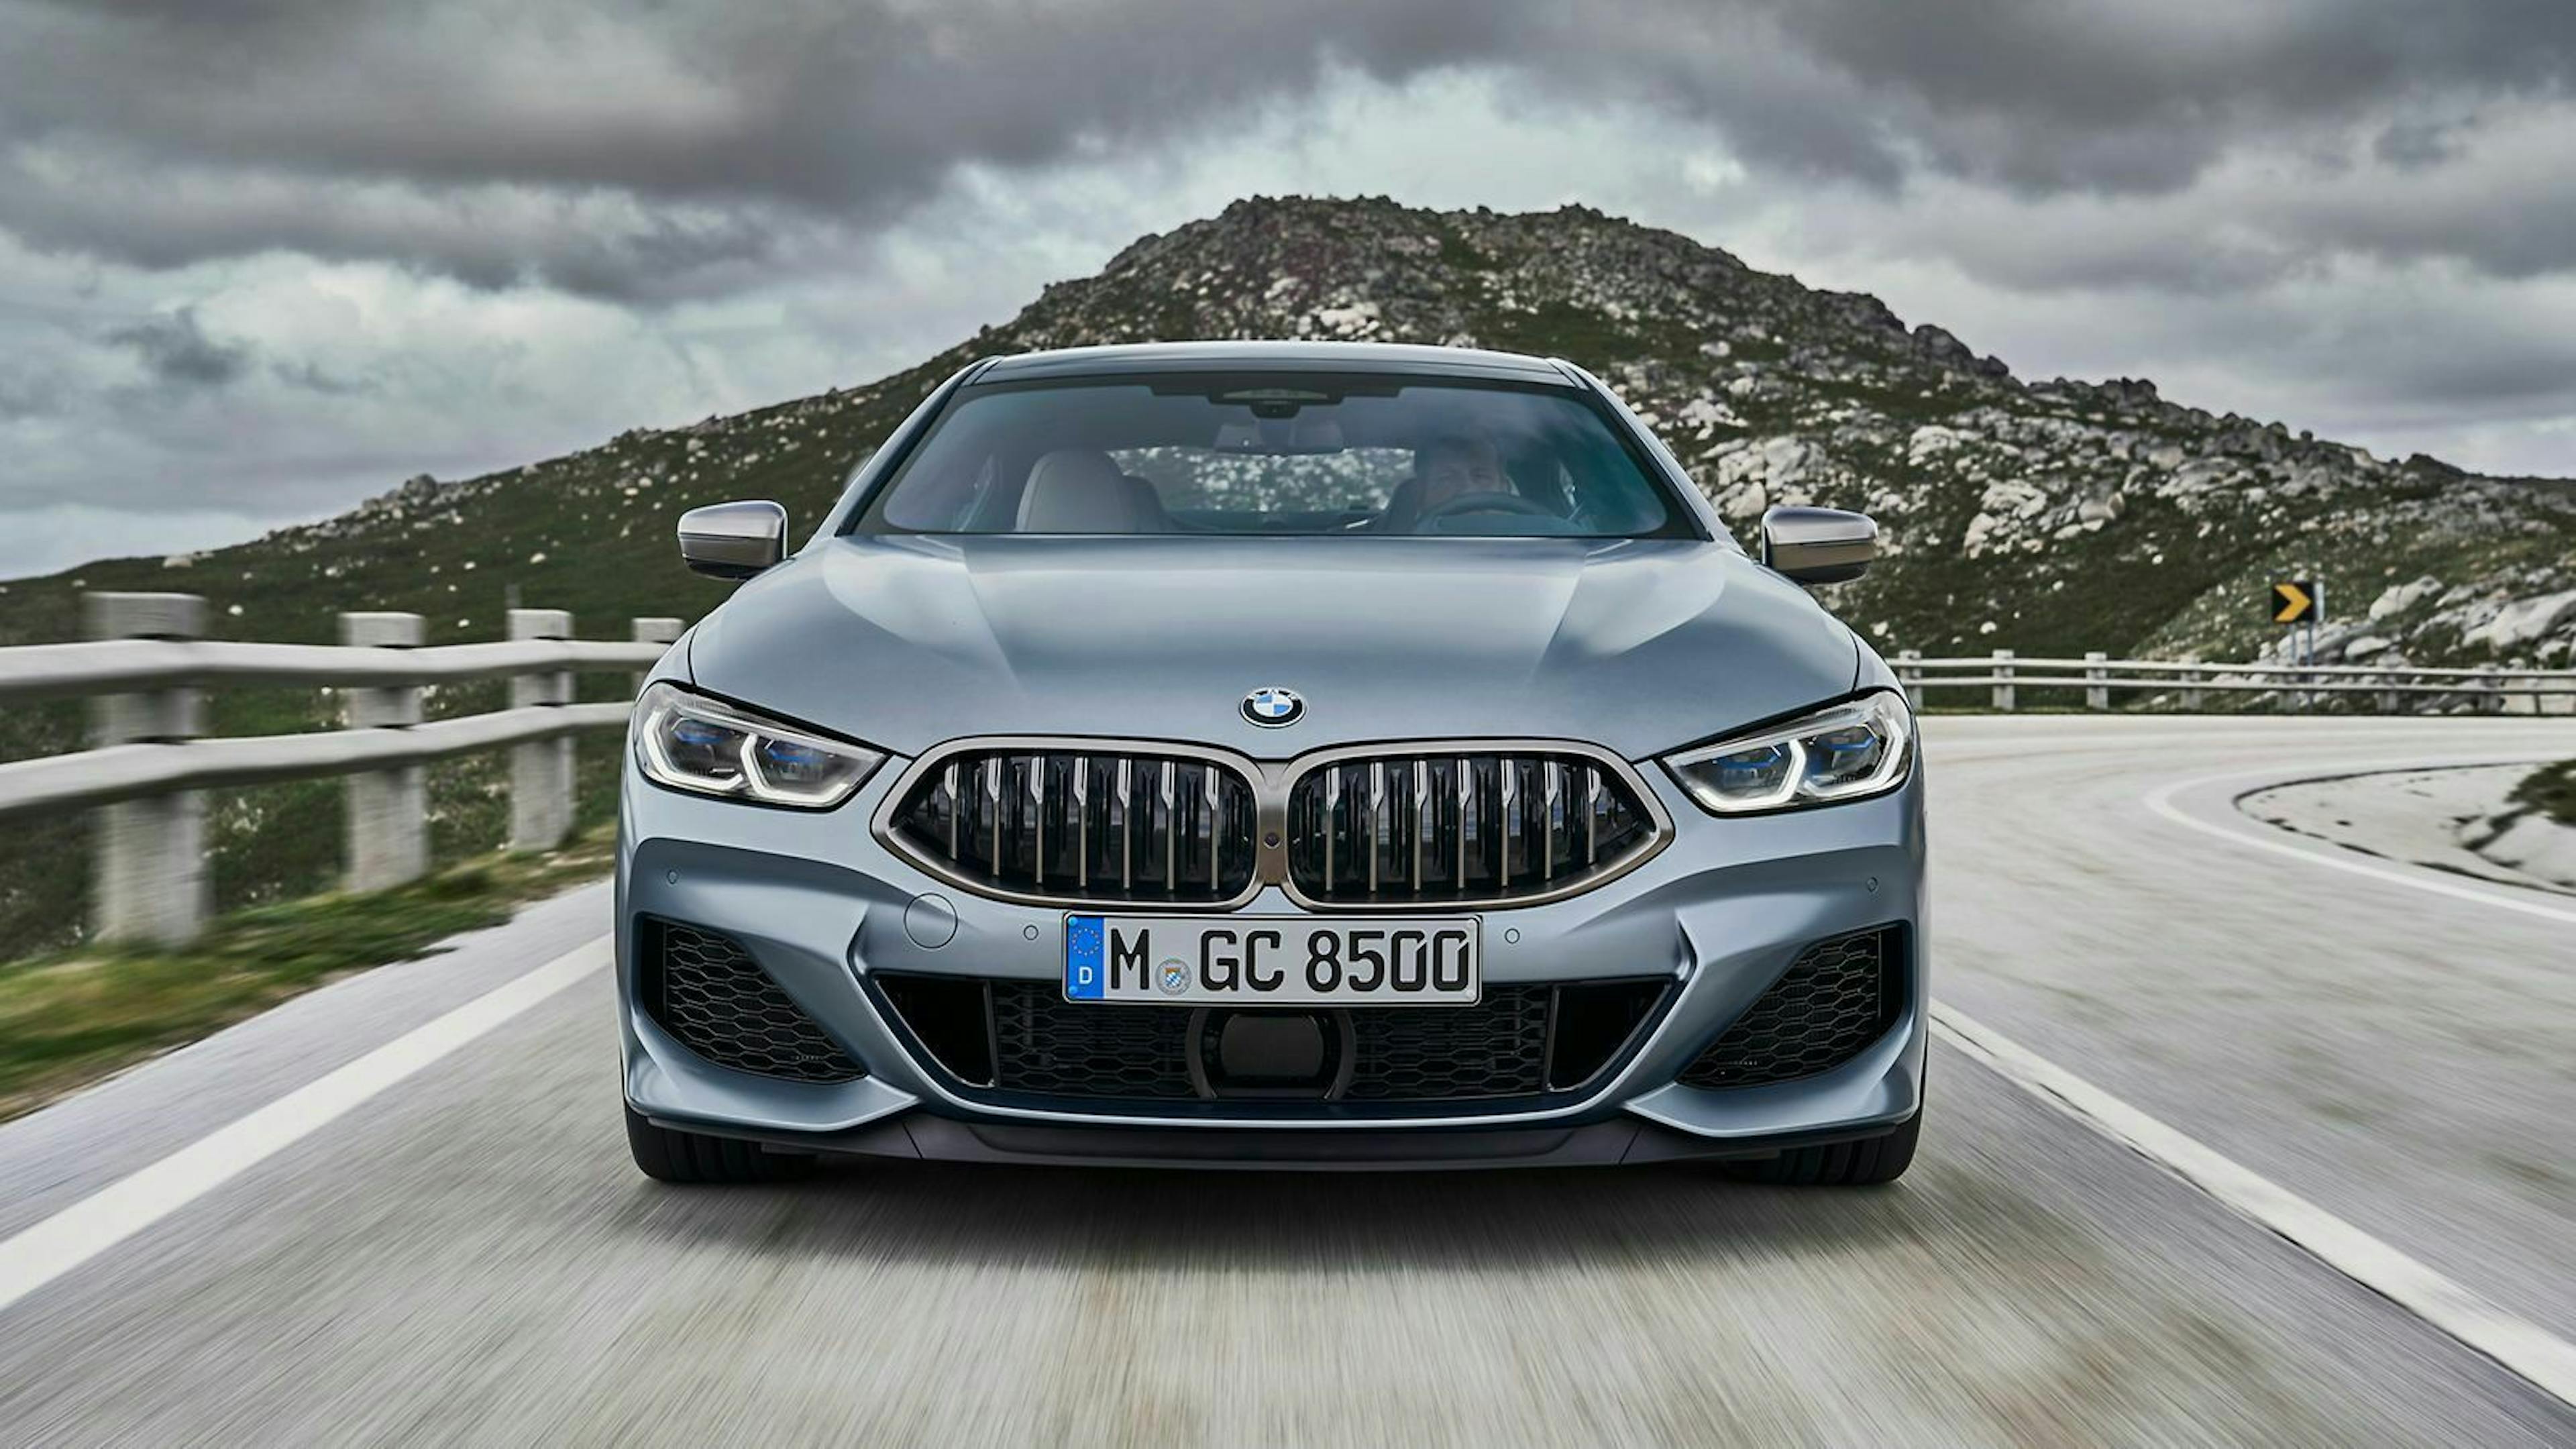 Spitze Nieren und schmale Scheinwerfer: Der BMW 8er Gran Coupé sieht sportlich aus